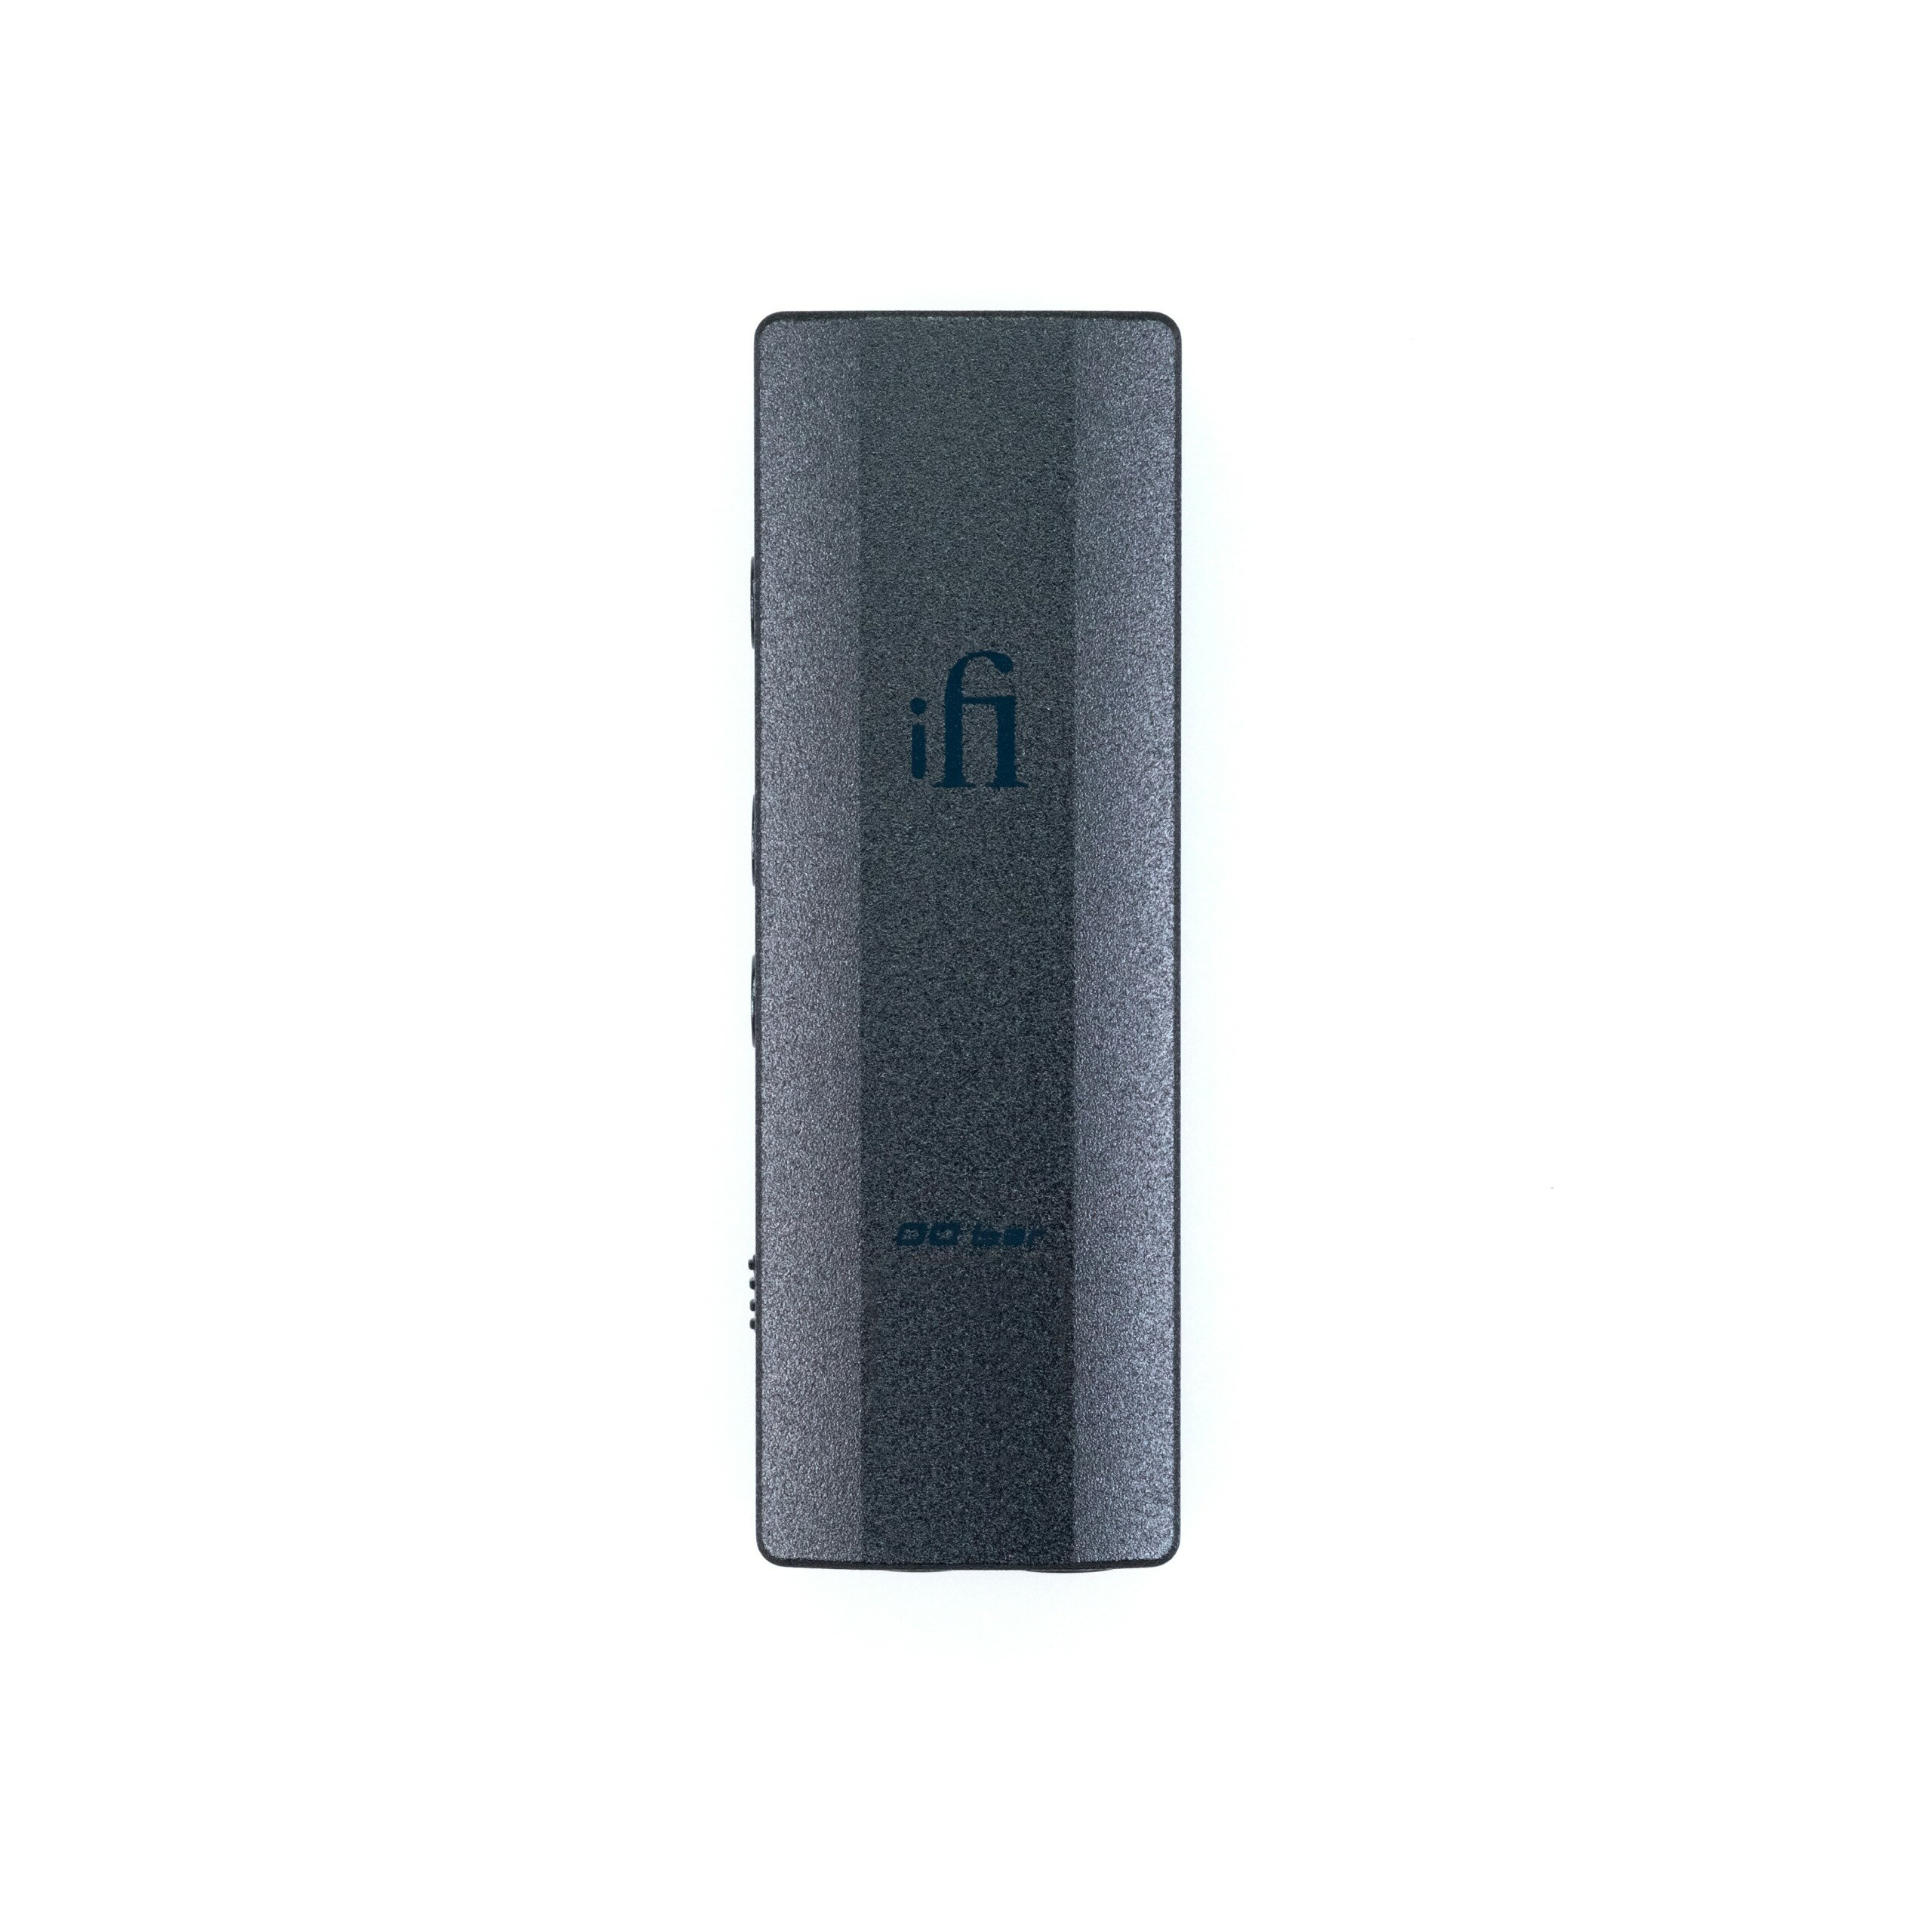 ・ポケットサイズのハイレゾ対応USB DAC/プリアンプ/ヘッドフォンアンプ ・左右対称のデュアルモノ出力段を持つトゥルーバランス回路設計 ・2系統の超低ノイズ・ヘッドフォン出力（4.4mmフルバランス、S-Balanced 3.5mm） ...